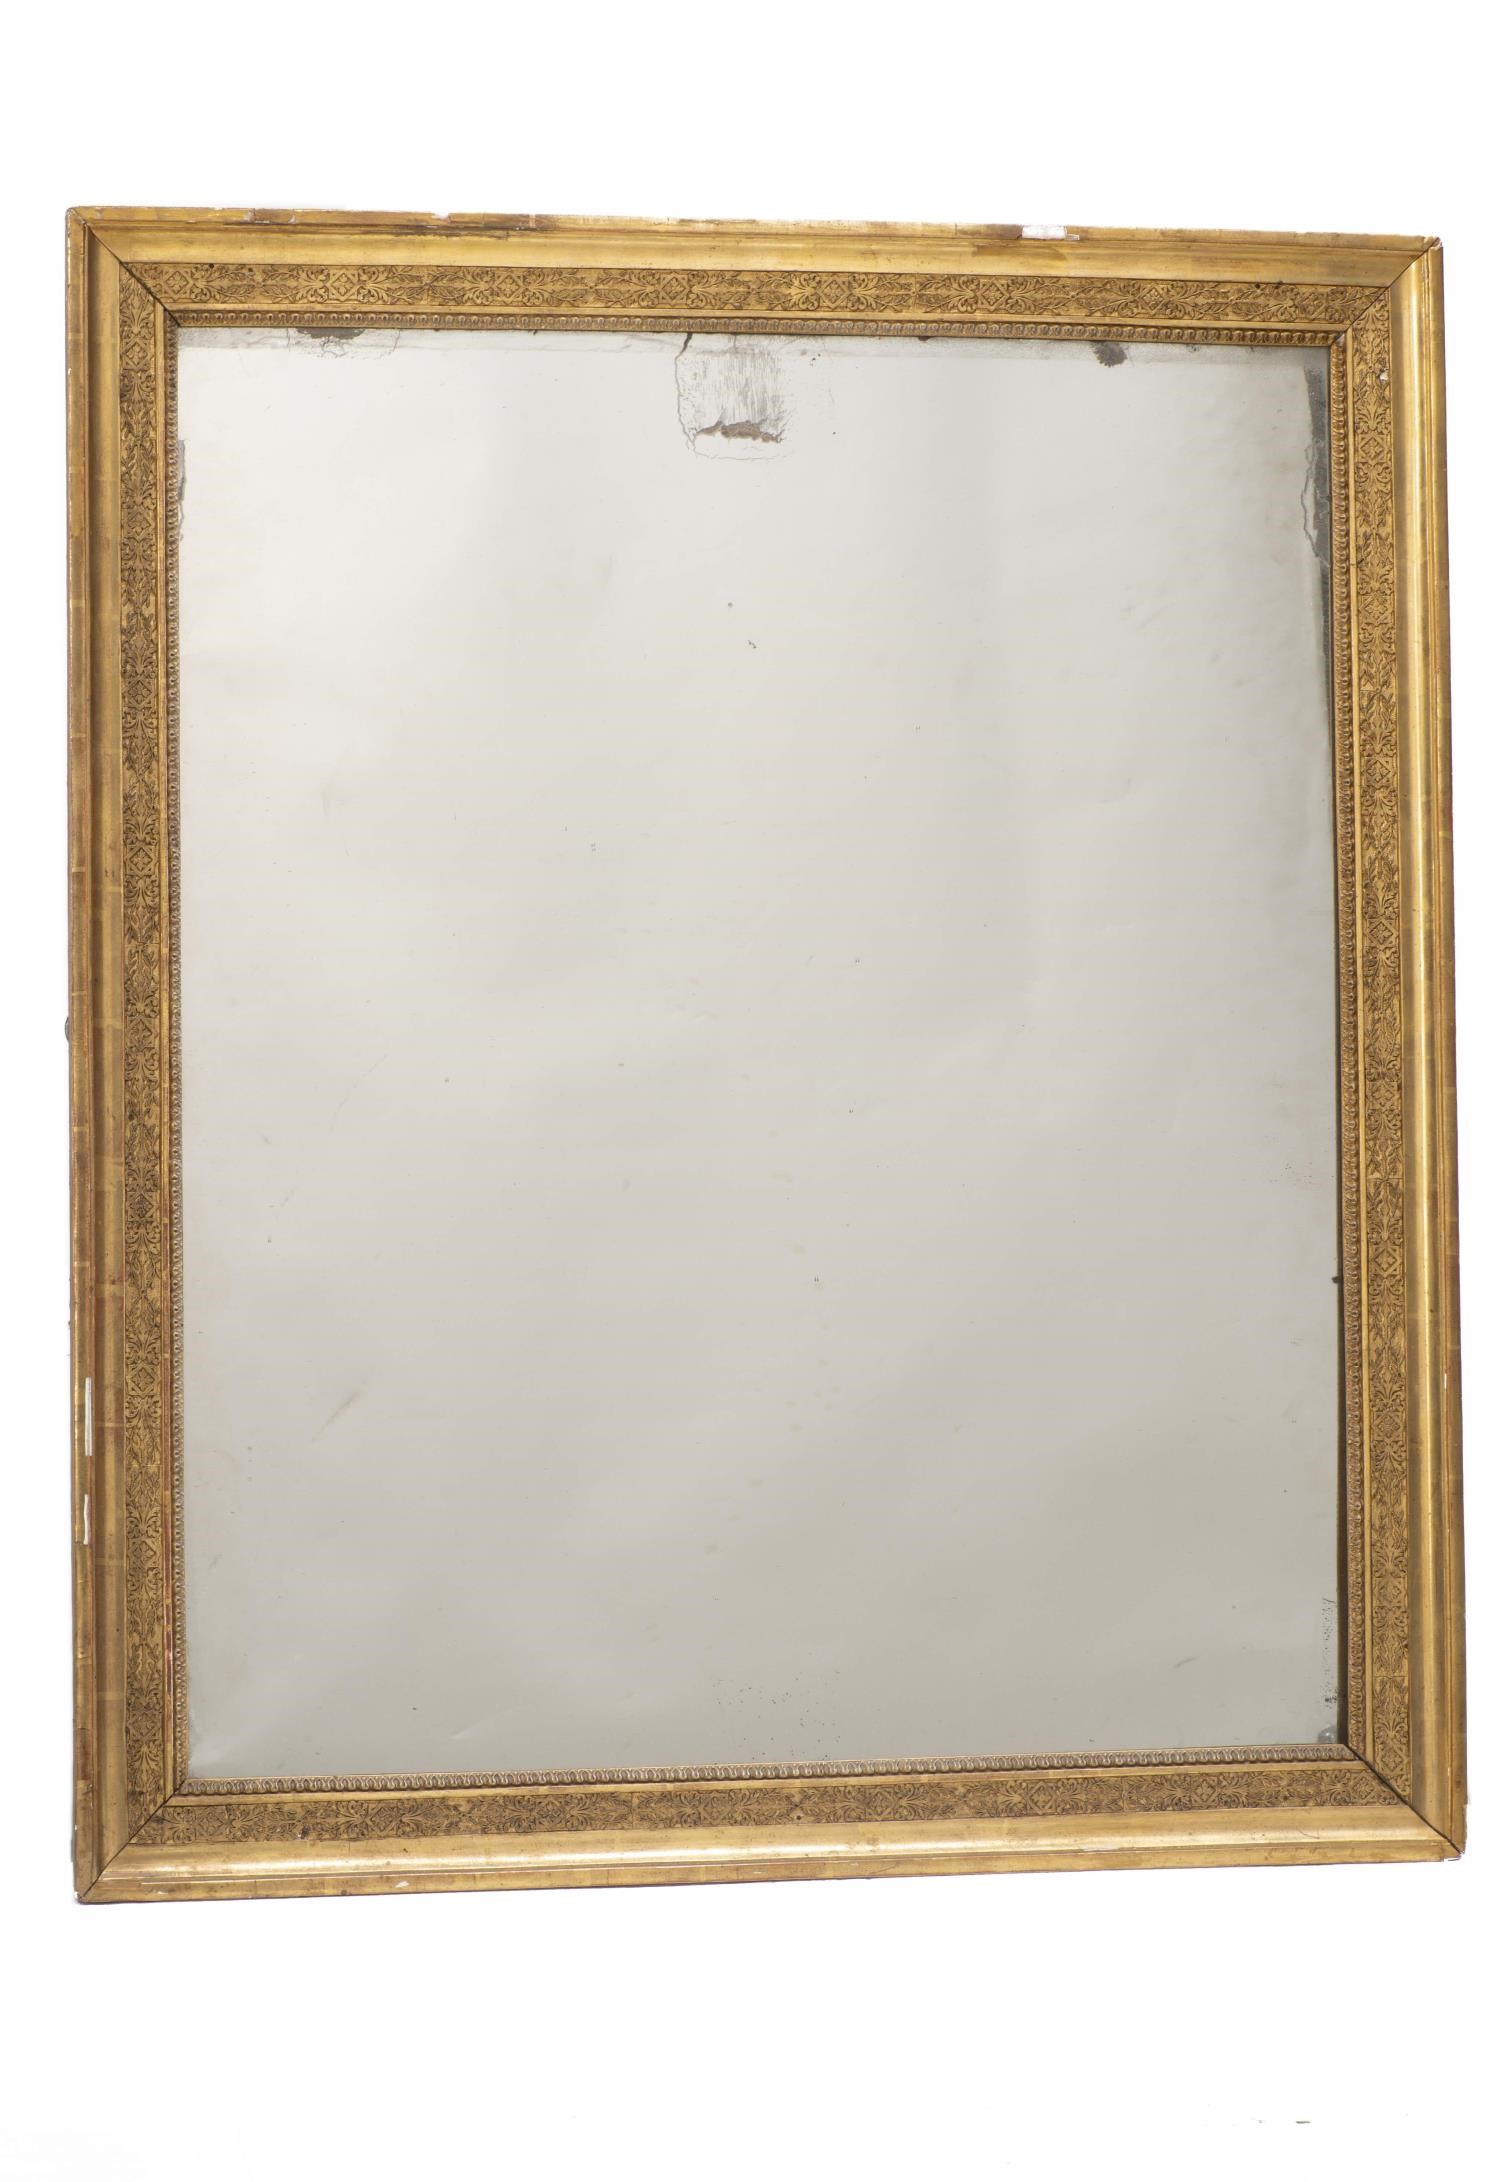 Miroir rectangulaire à cadre en bois et stuc doré d'époque Nap. III H. 97x84 cm - [...]